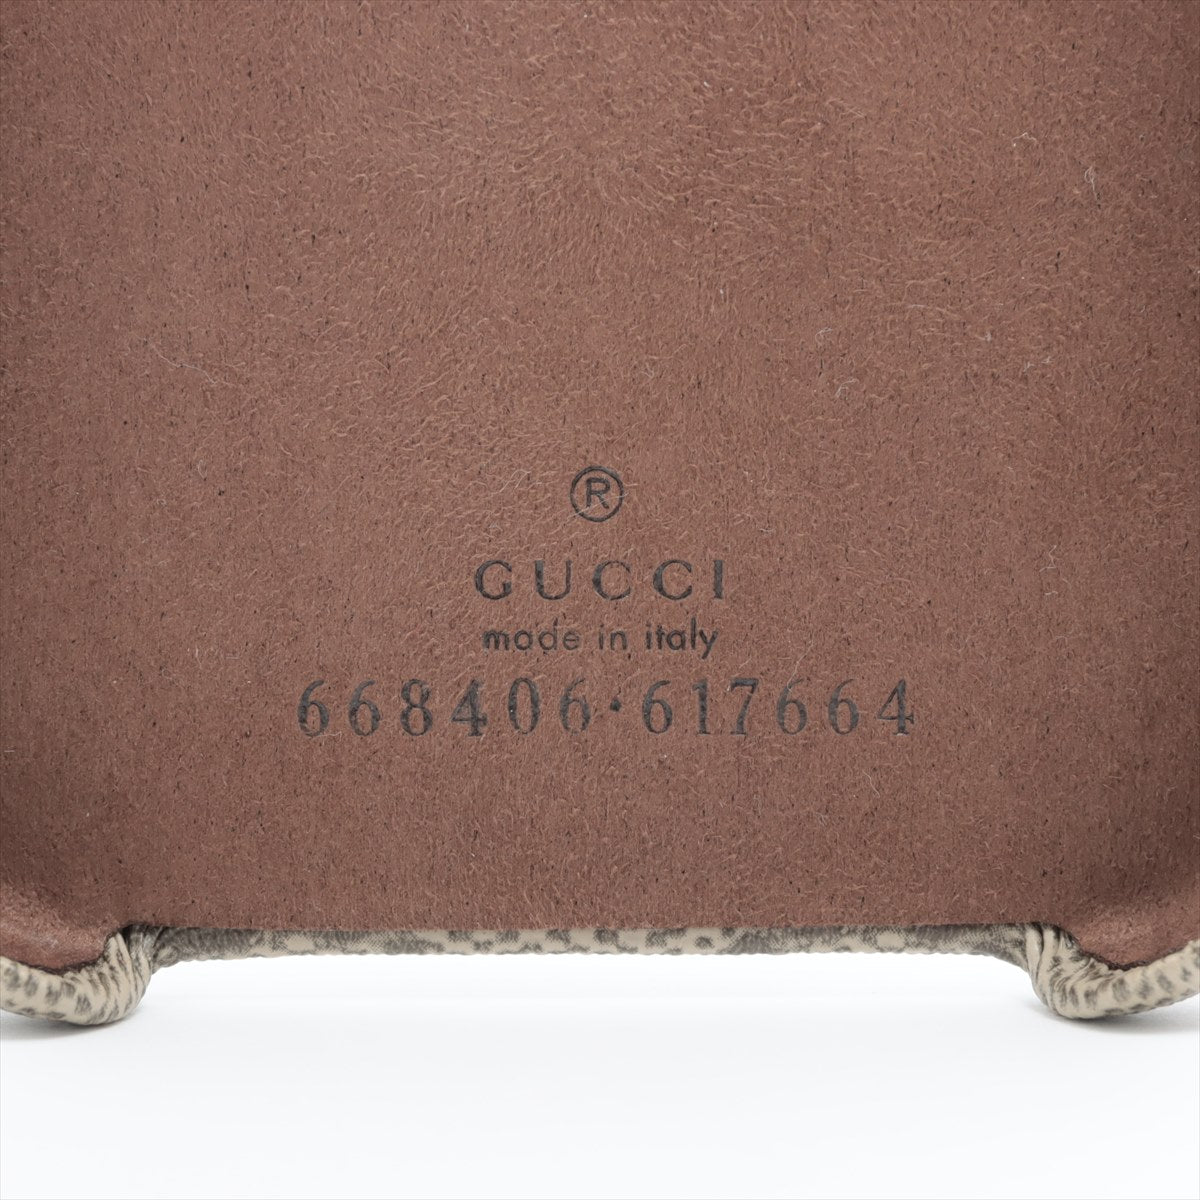 Gucci GG Supreme 668406 PVC iPhone case Beige